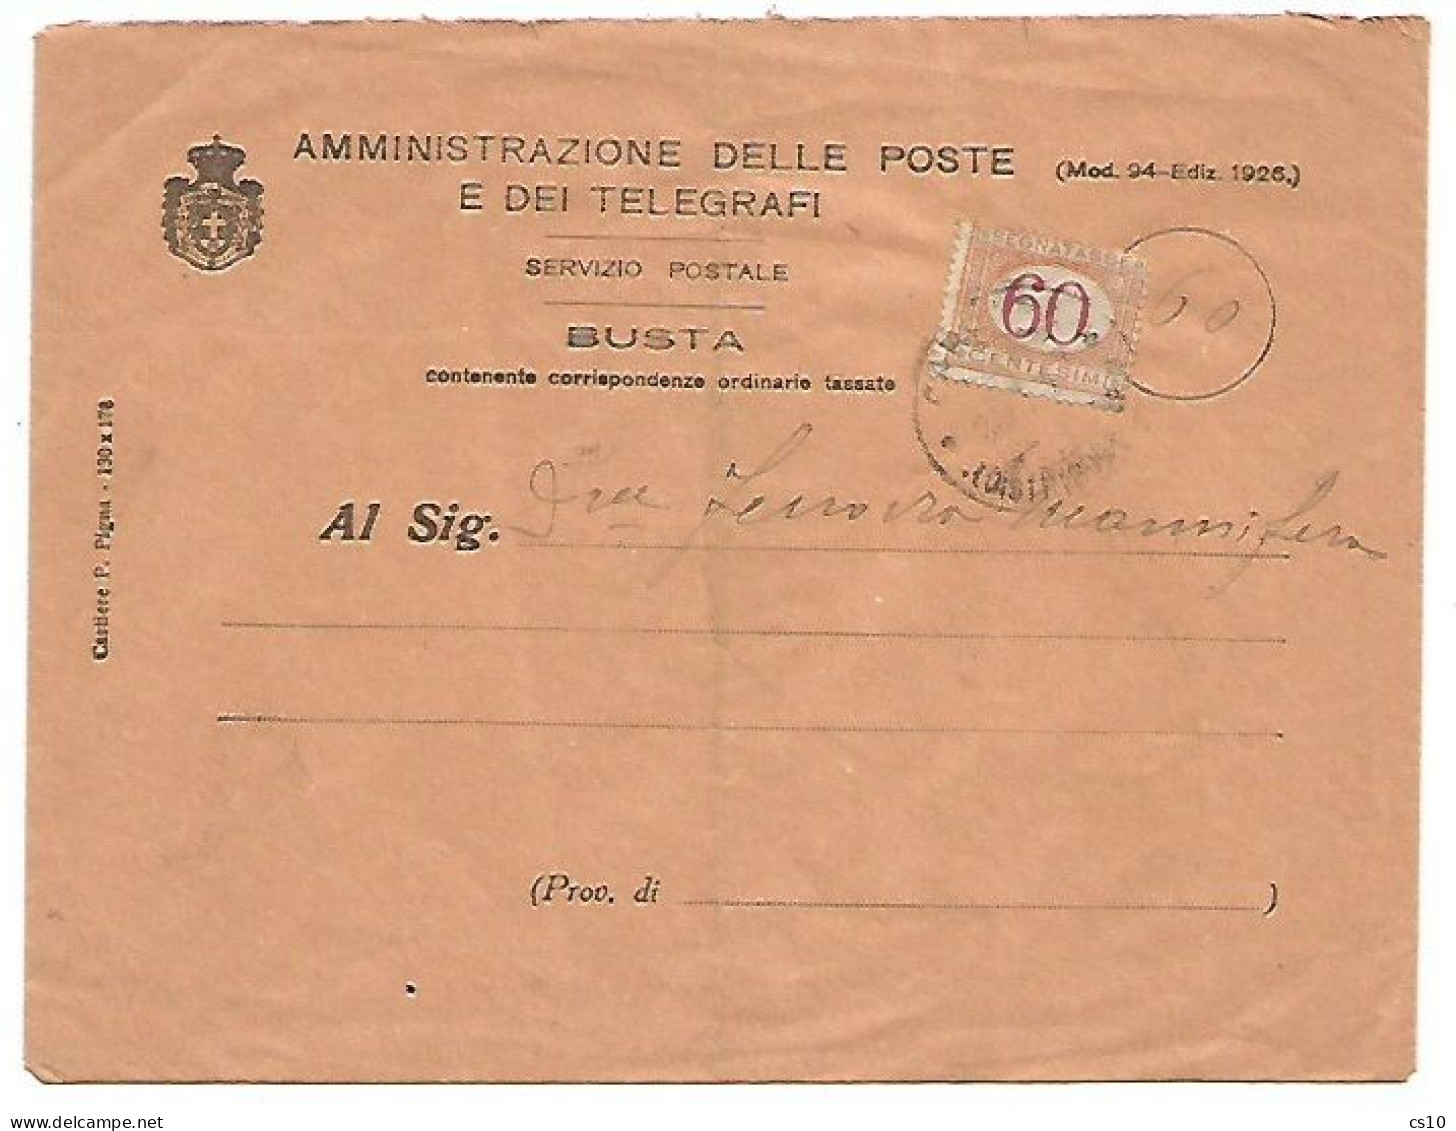 SegnaTasse Cifra Carminio C.60 #26 Isolato TC Busta Amm.PPTT Carrara 1926 X Ferrovia Marmifera - Impuestos